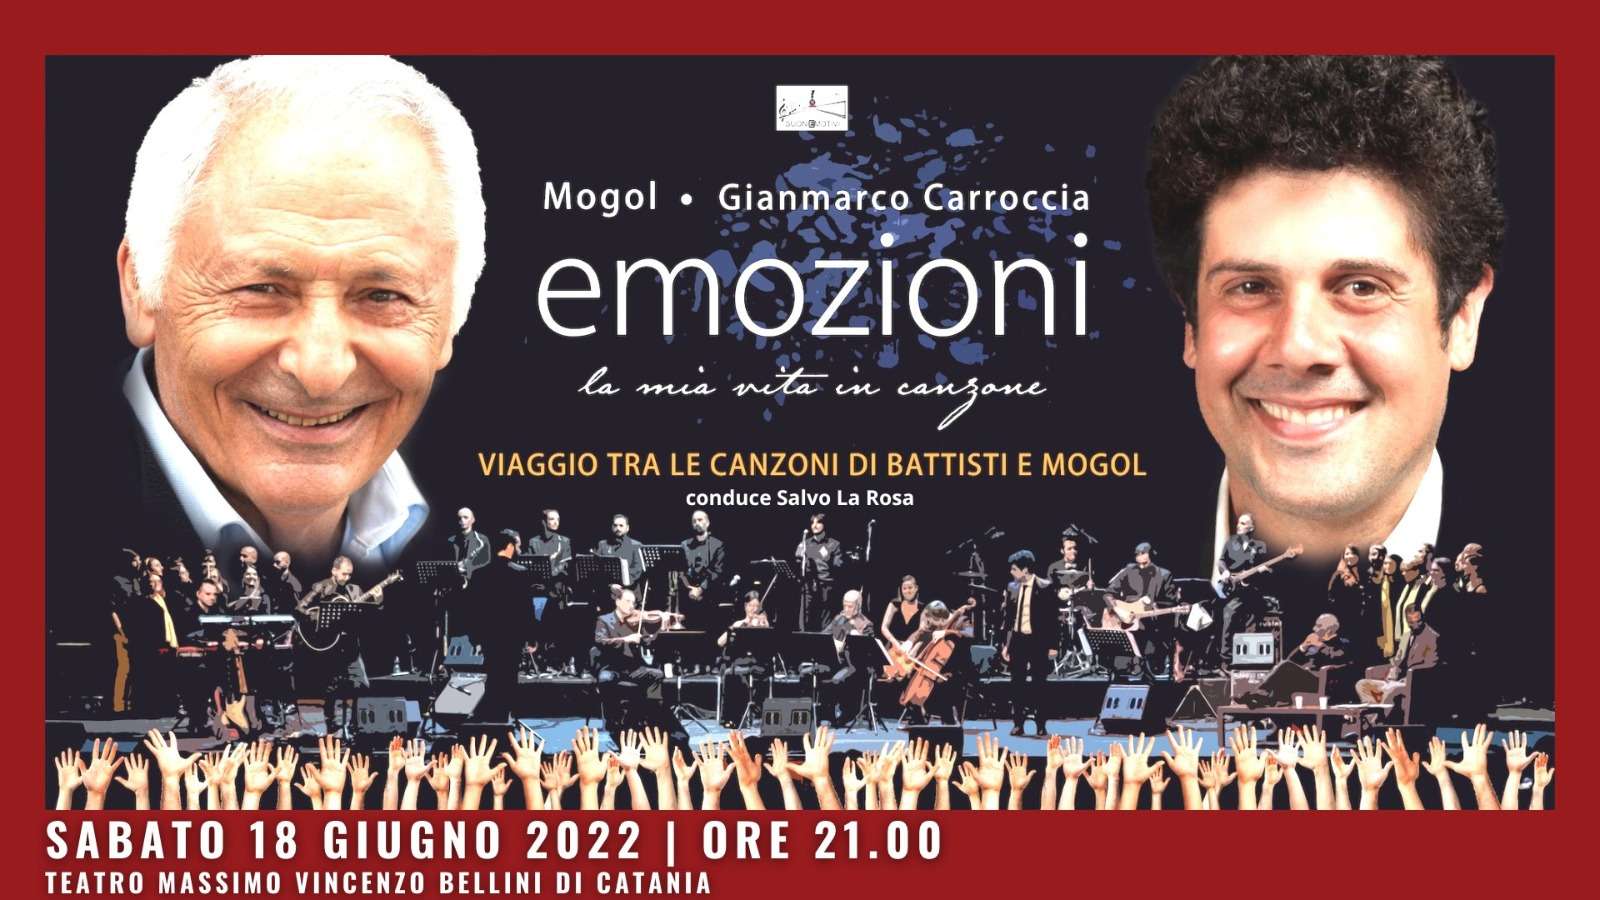 Sabato 18 giugno, per il concerto “Emozioni” con Mogol